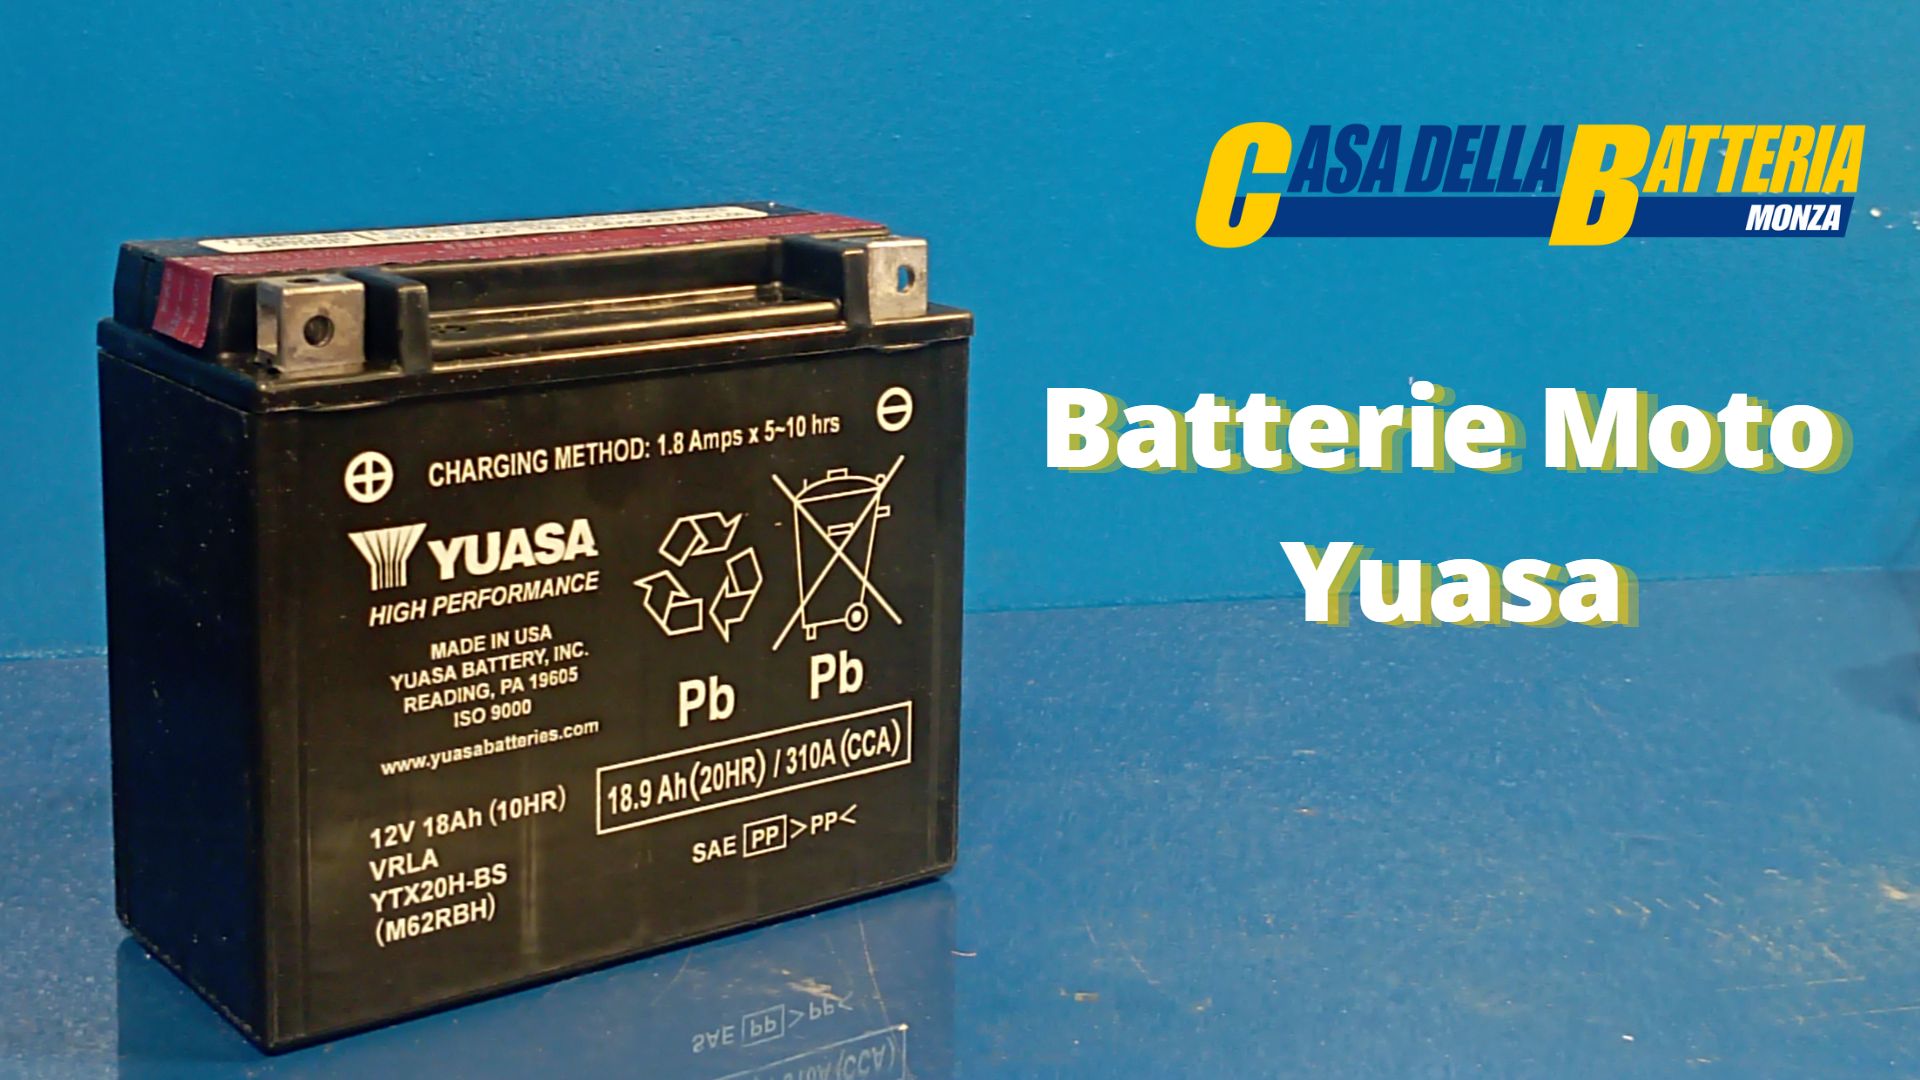 Batterie Moto Yuasa; tutto quello che c’è da sapere – I consigli di Andrea